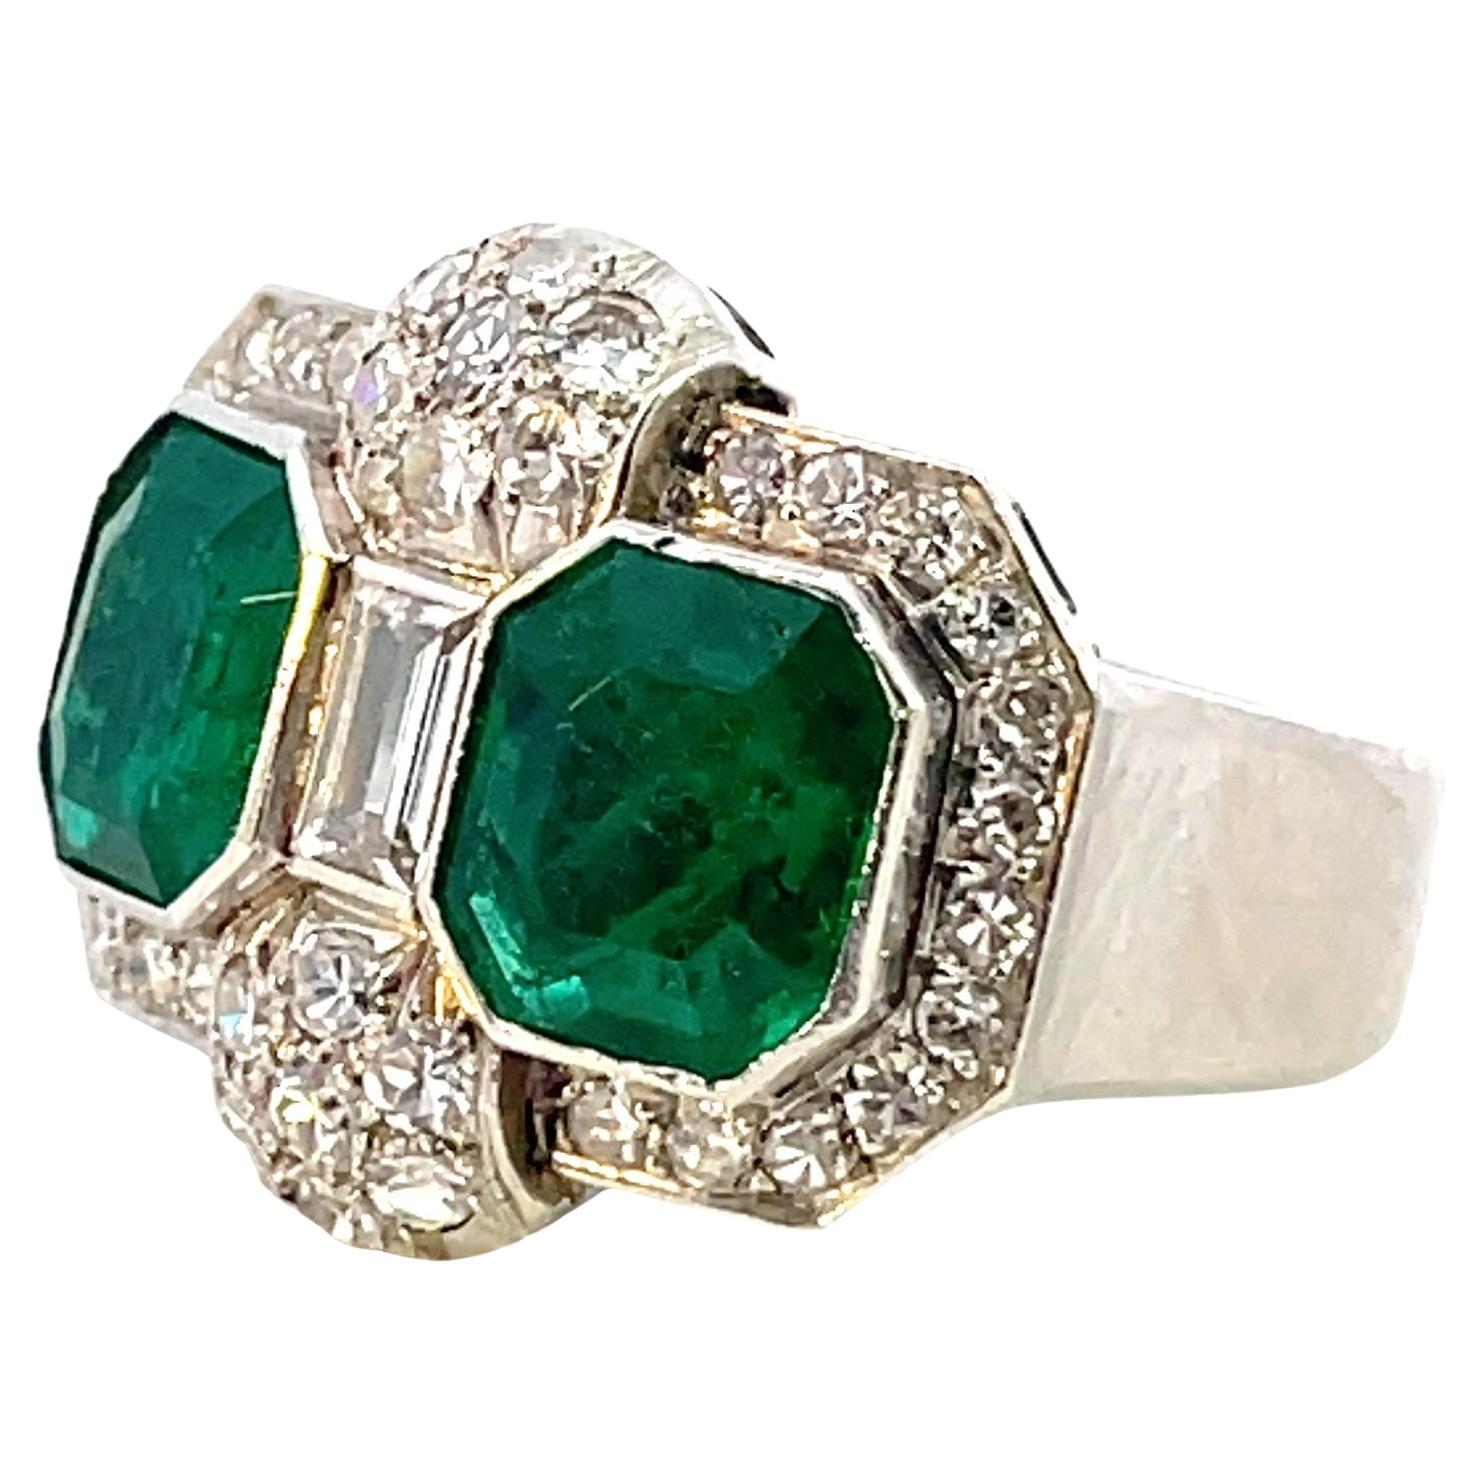 Beeindruckende Qualität des Art déco  Kolumbien Smaragd Platin Ring
2 leuchtend grüne Smaragde mit einem Gewicht von je ca. 2,5 ct
